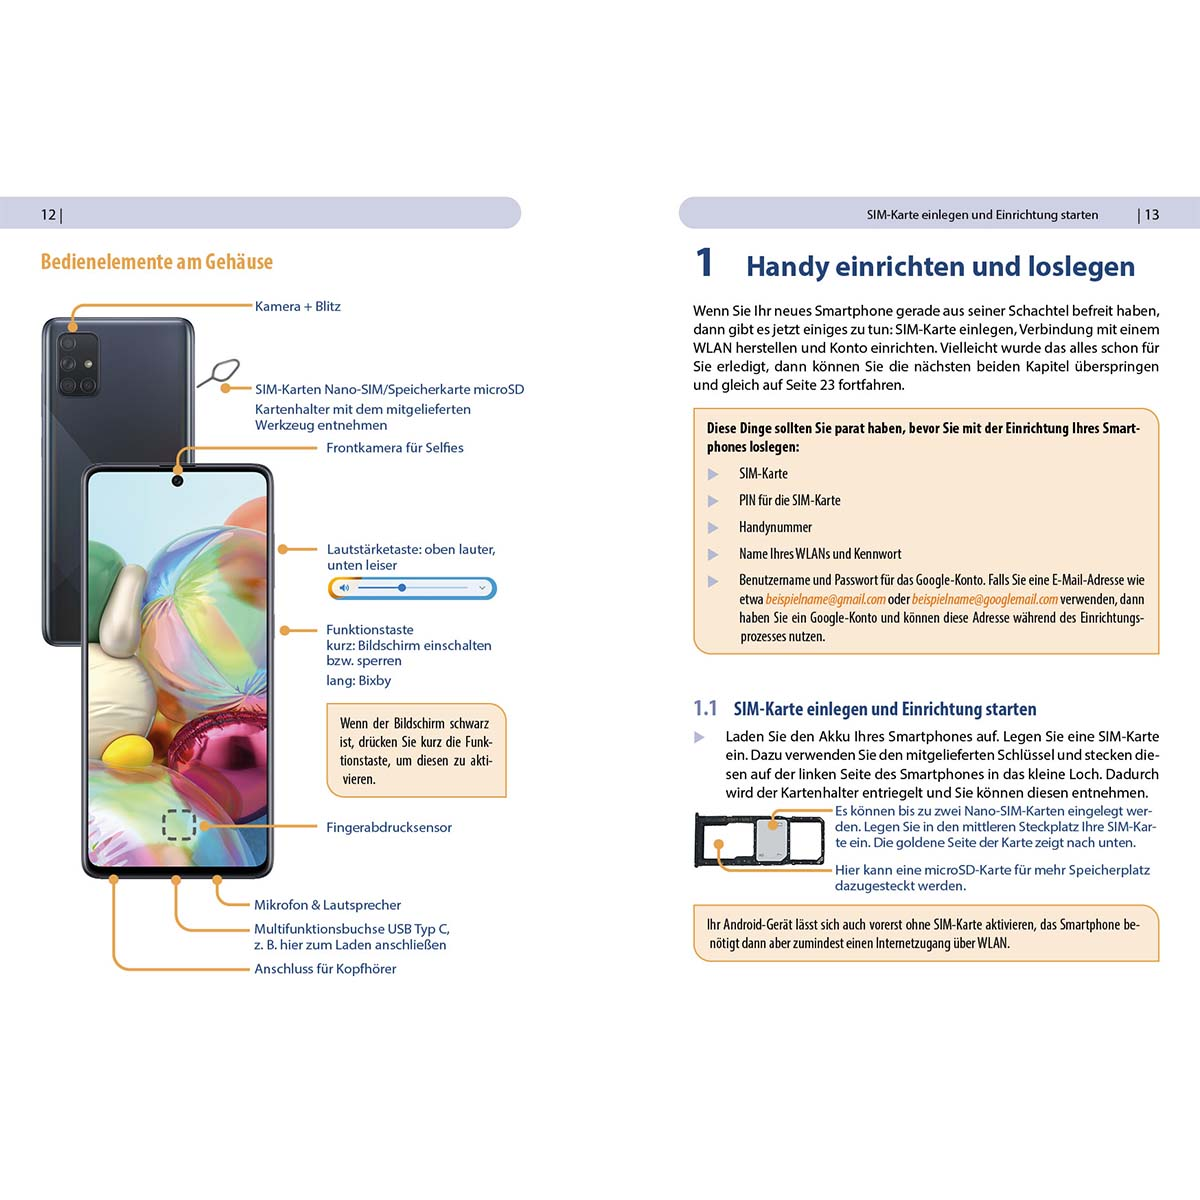 Samsung Galaxy Für ohne Vorkenntnisse - Einsteiger A71